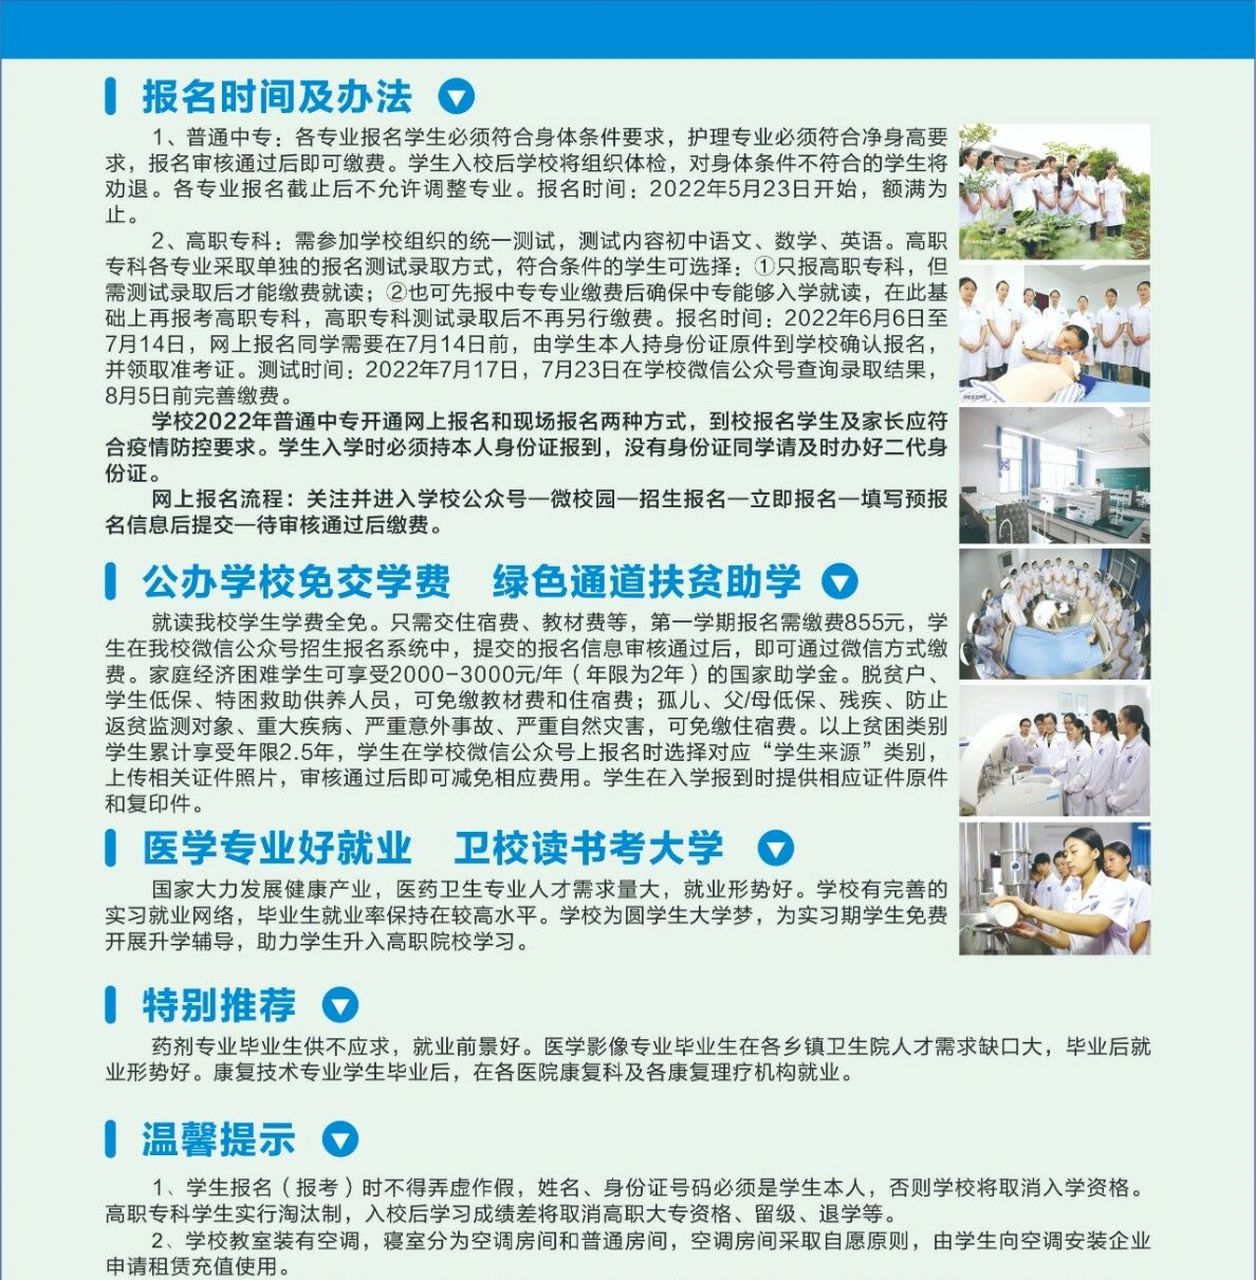 重庆市医药卫生学校(原涪陵卫校)招生简章 重庆市医药卫生学校是重庆